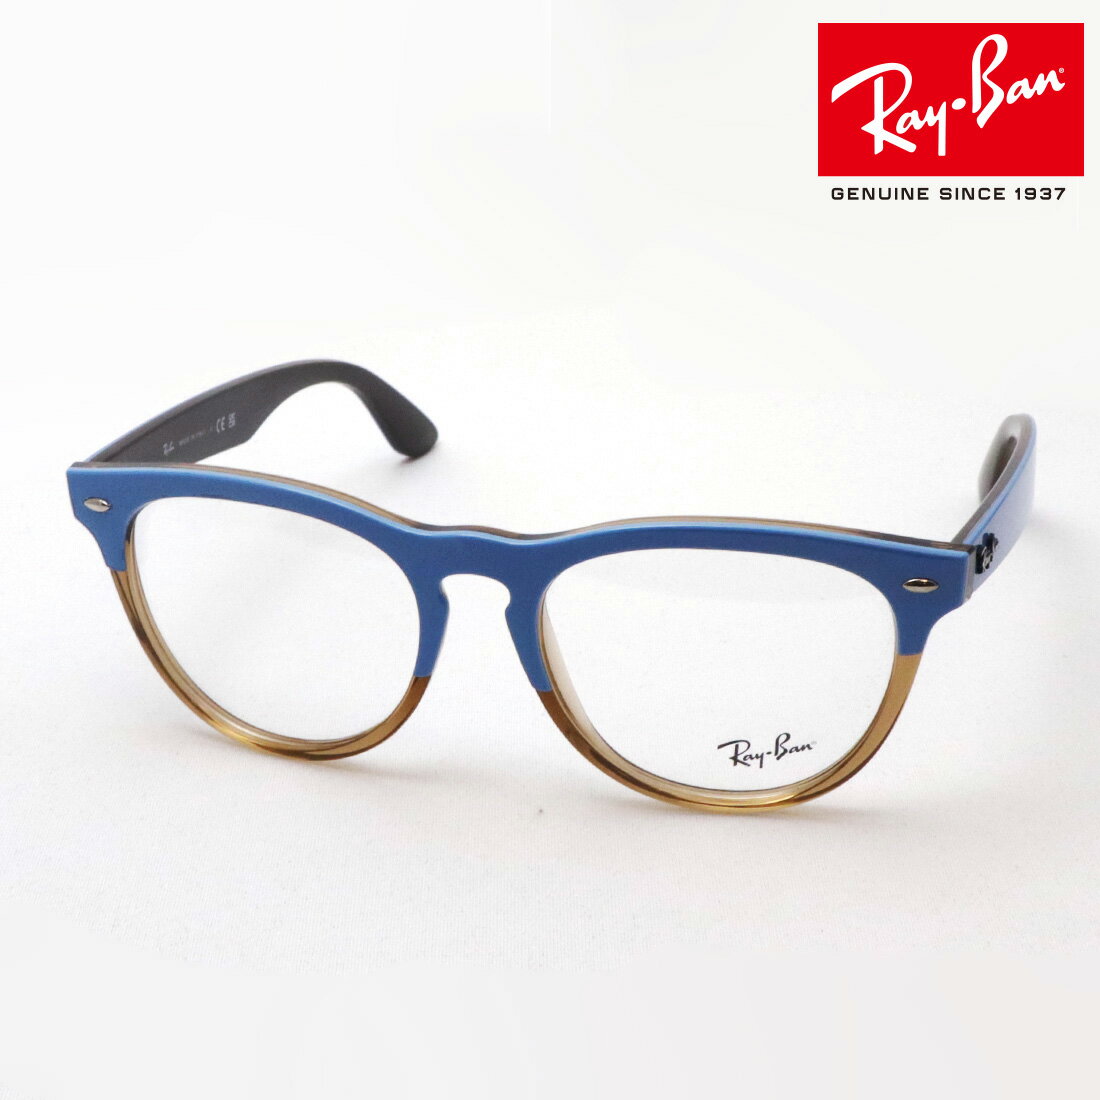 レイバン メガネ メンズ 正規レイバン日本最大級の品揃え レイバン メガネ フレーム IRIS アイリス Ray-Ban RX4471V 8196 伊達メガネ 度付き ブルーライト カット 眼鏡 RayBan Made In Italy ラウンド ブルー系 ブラウン系